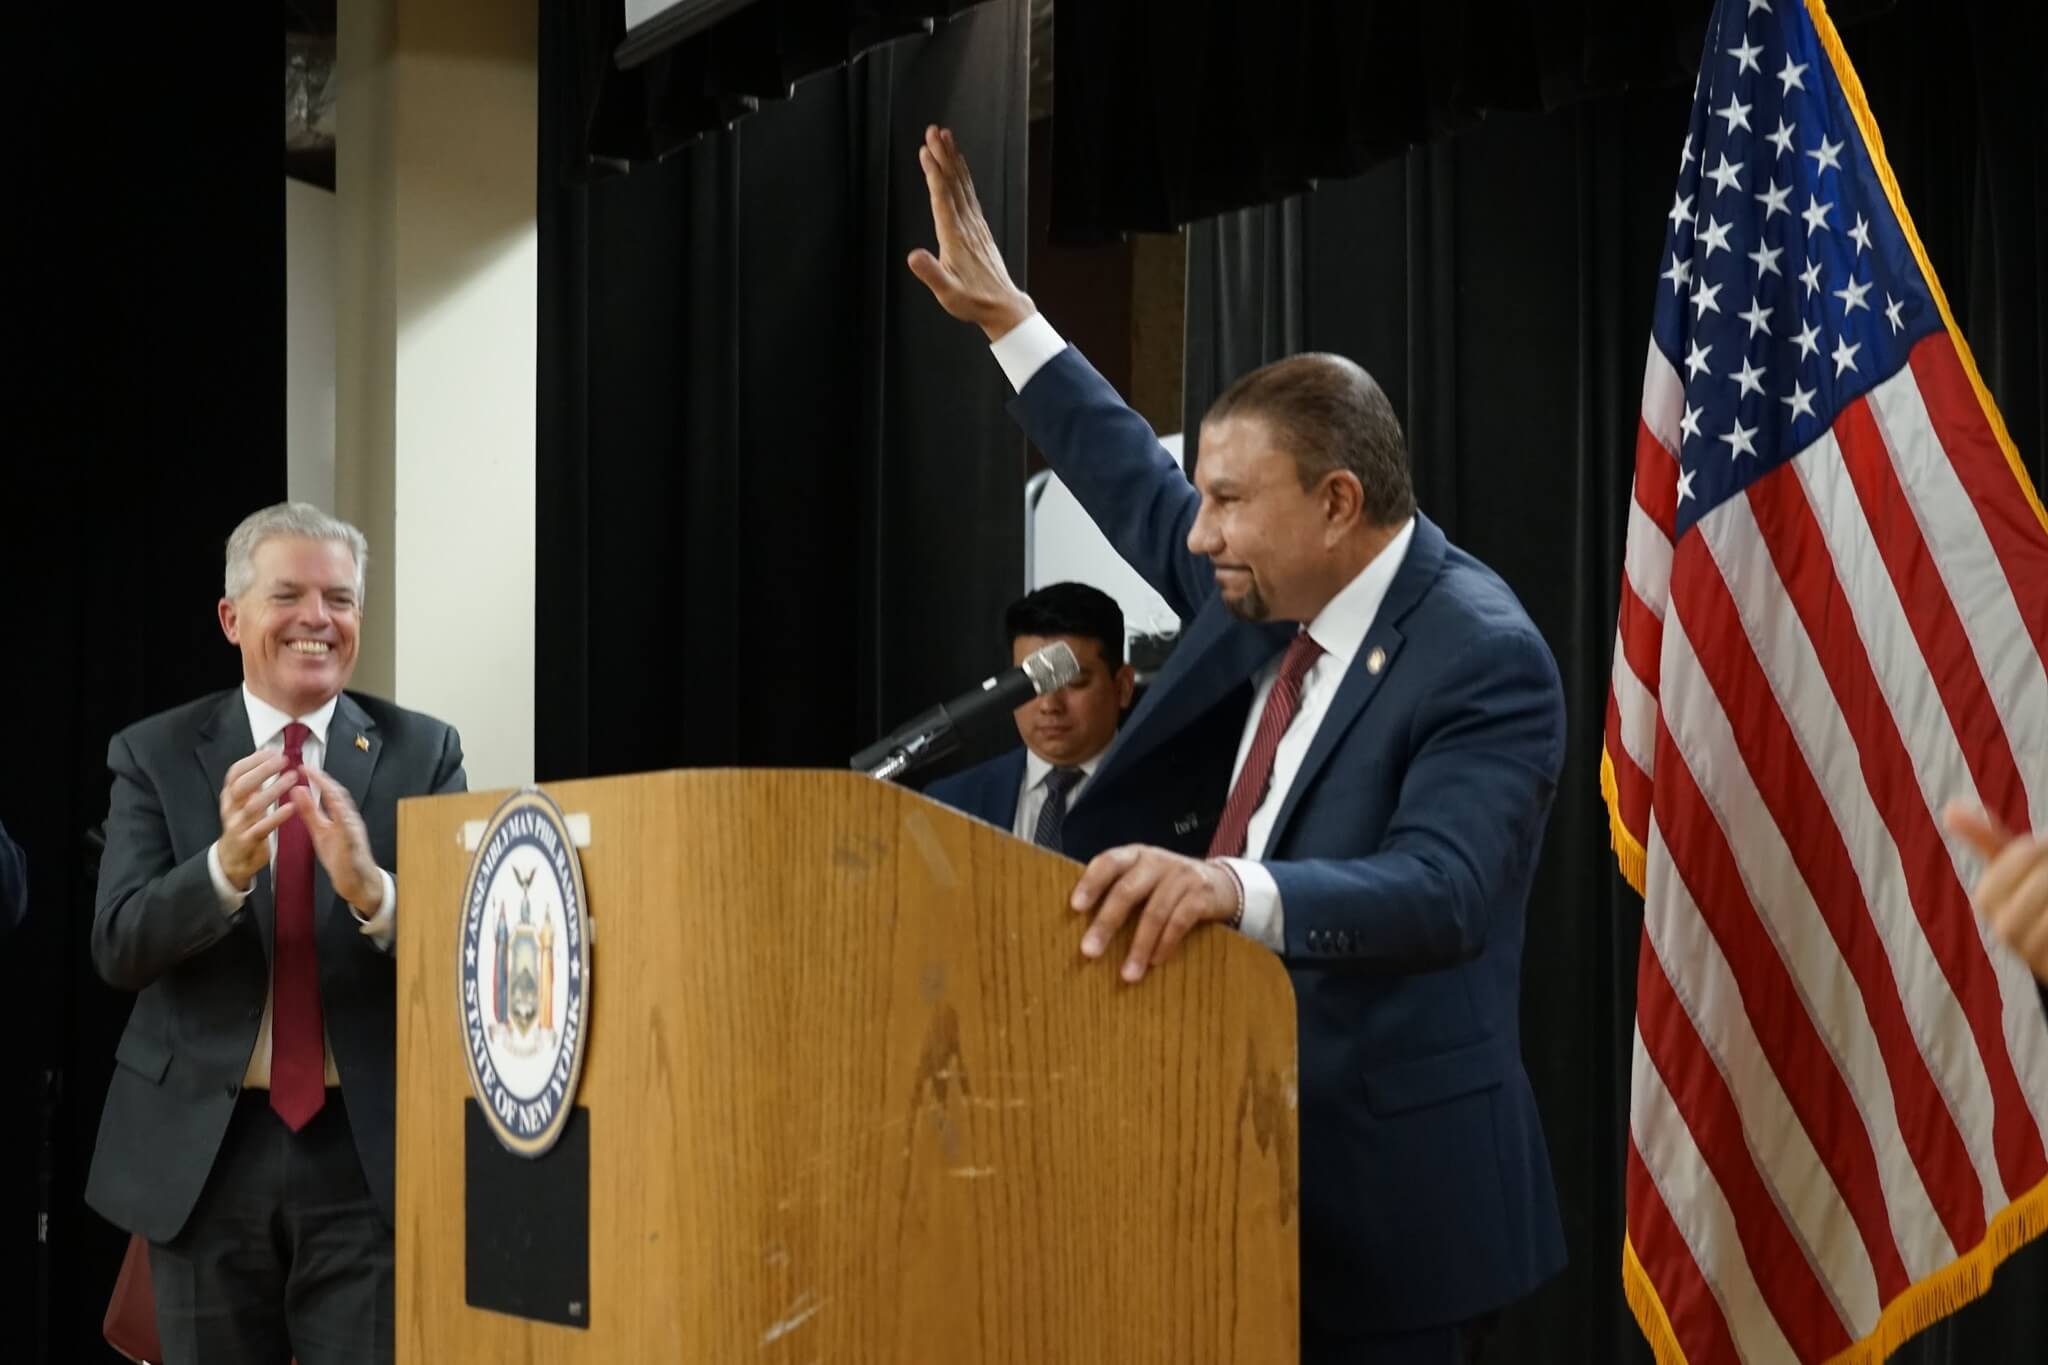 Phil Ramos juramenta como Vicepresidente de la Asamblea estatal de Nueva York